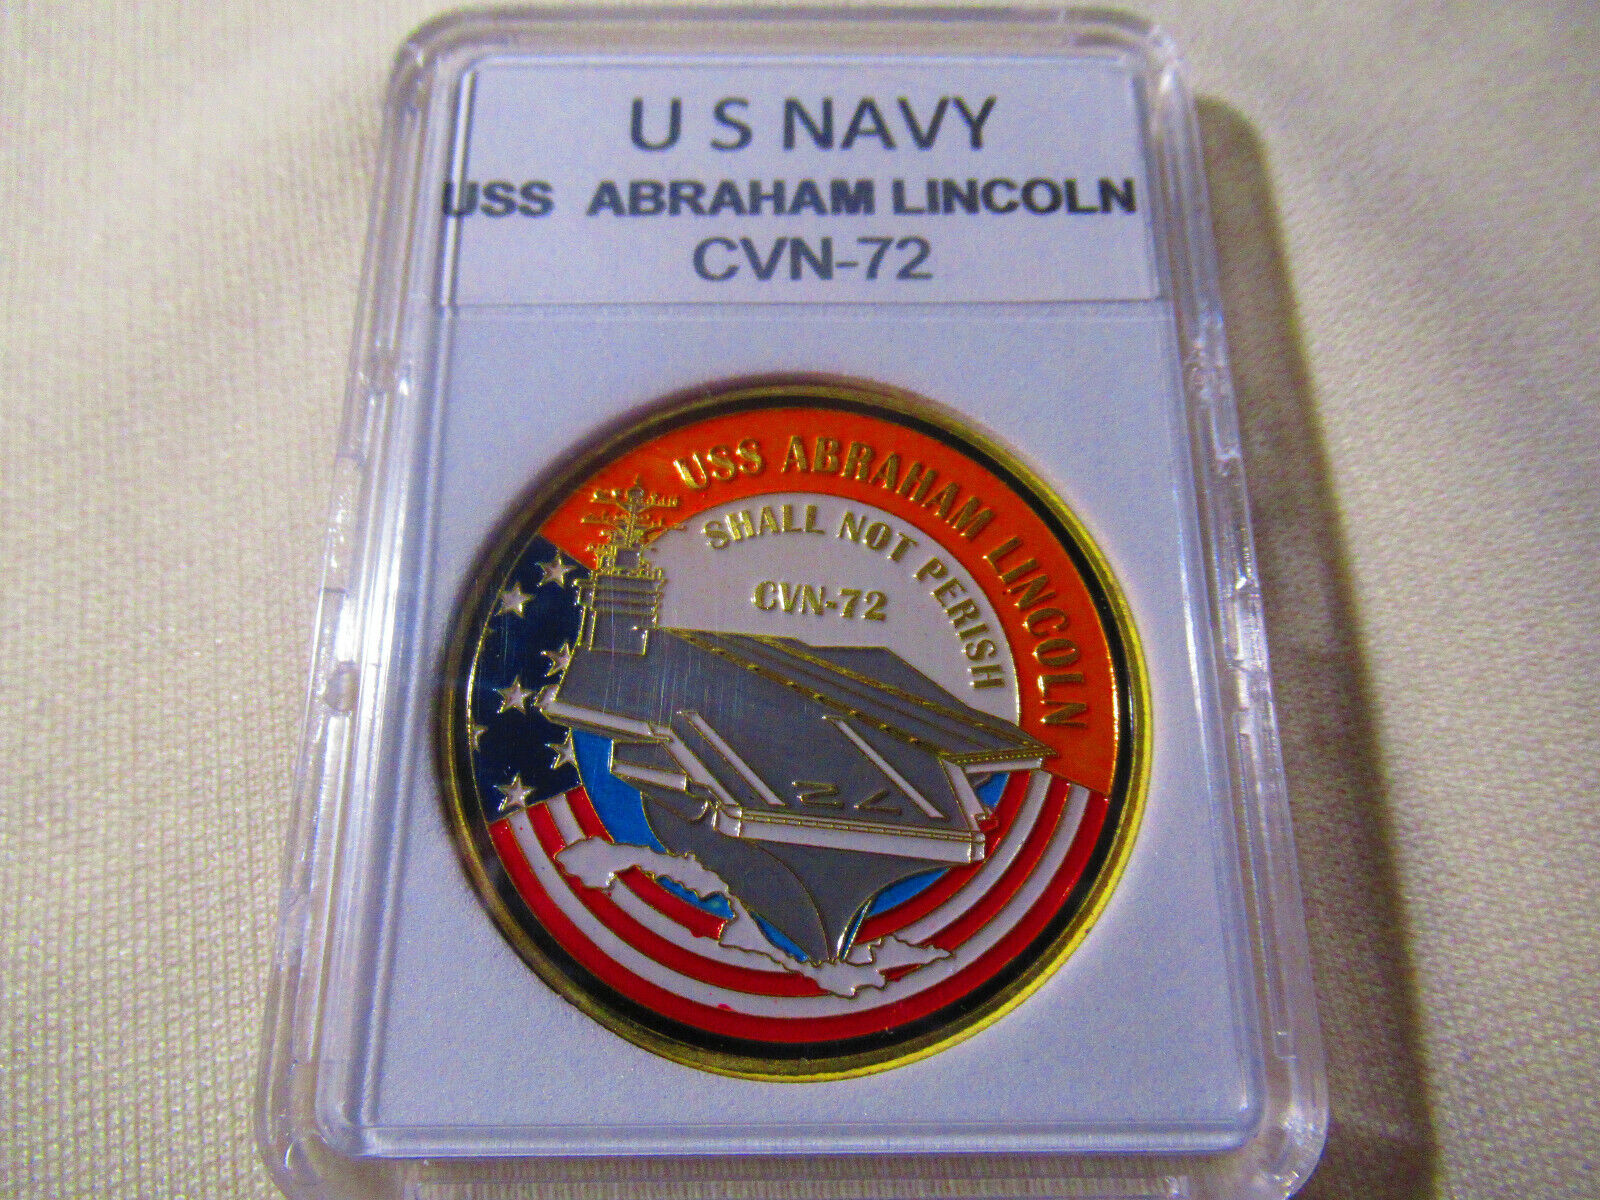 US NAVY USS ABRAHAM LINCOLN CVN-72 Challenge Coin